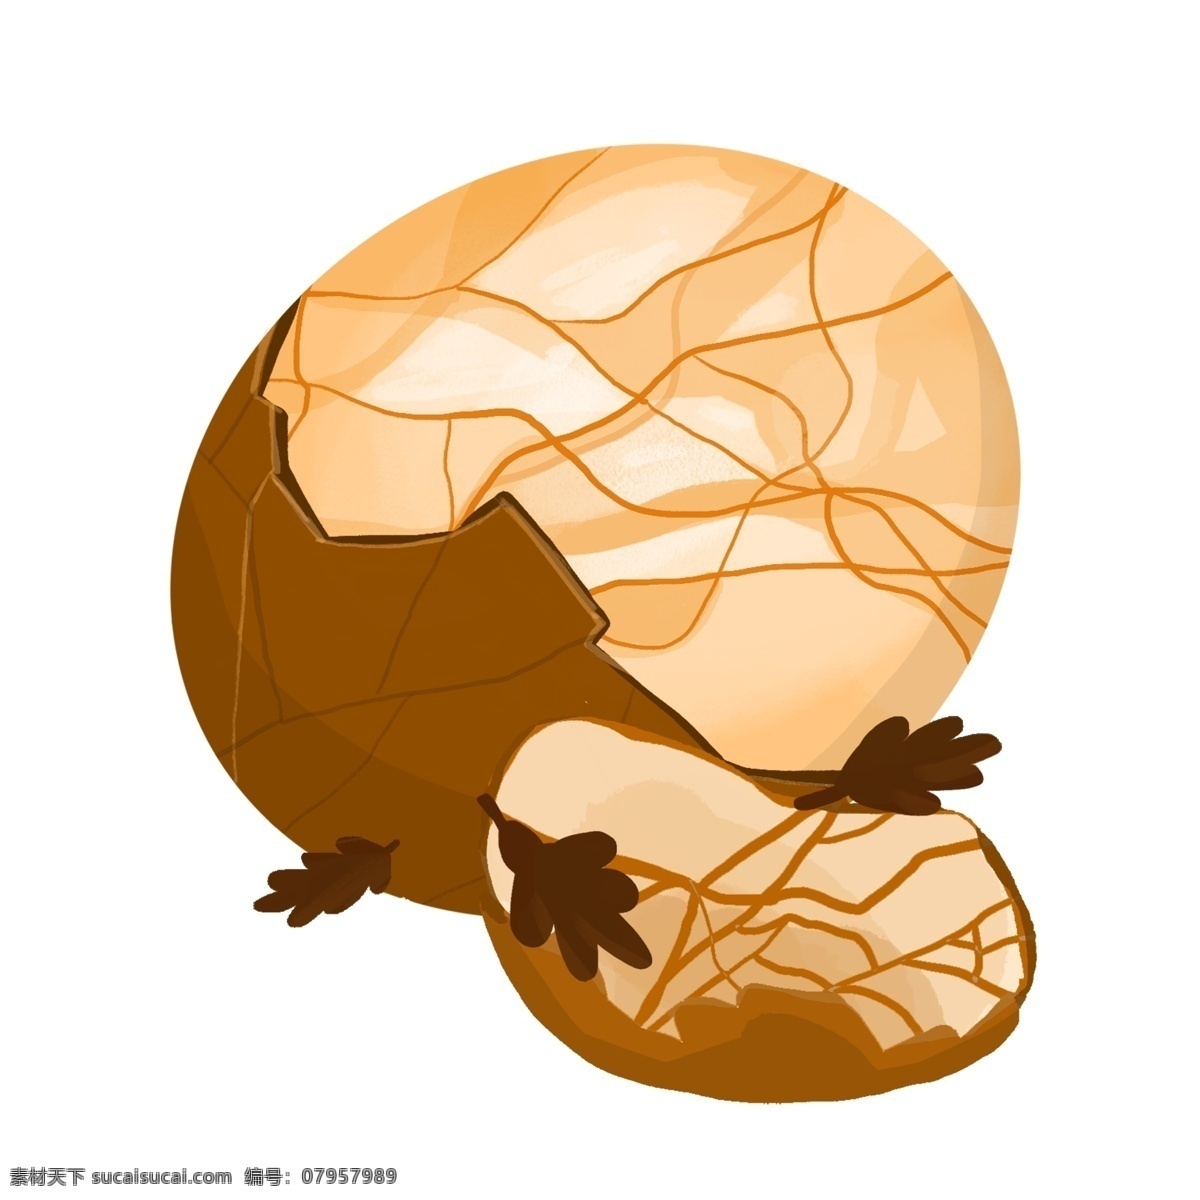 手绘 冬季 美食 茶叶蛋 插画 美味的茶叶蛋 棕色的茶叶蛋 美食插画 冬季美食 棕色的鸡蛋壳